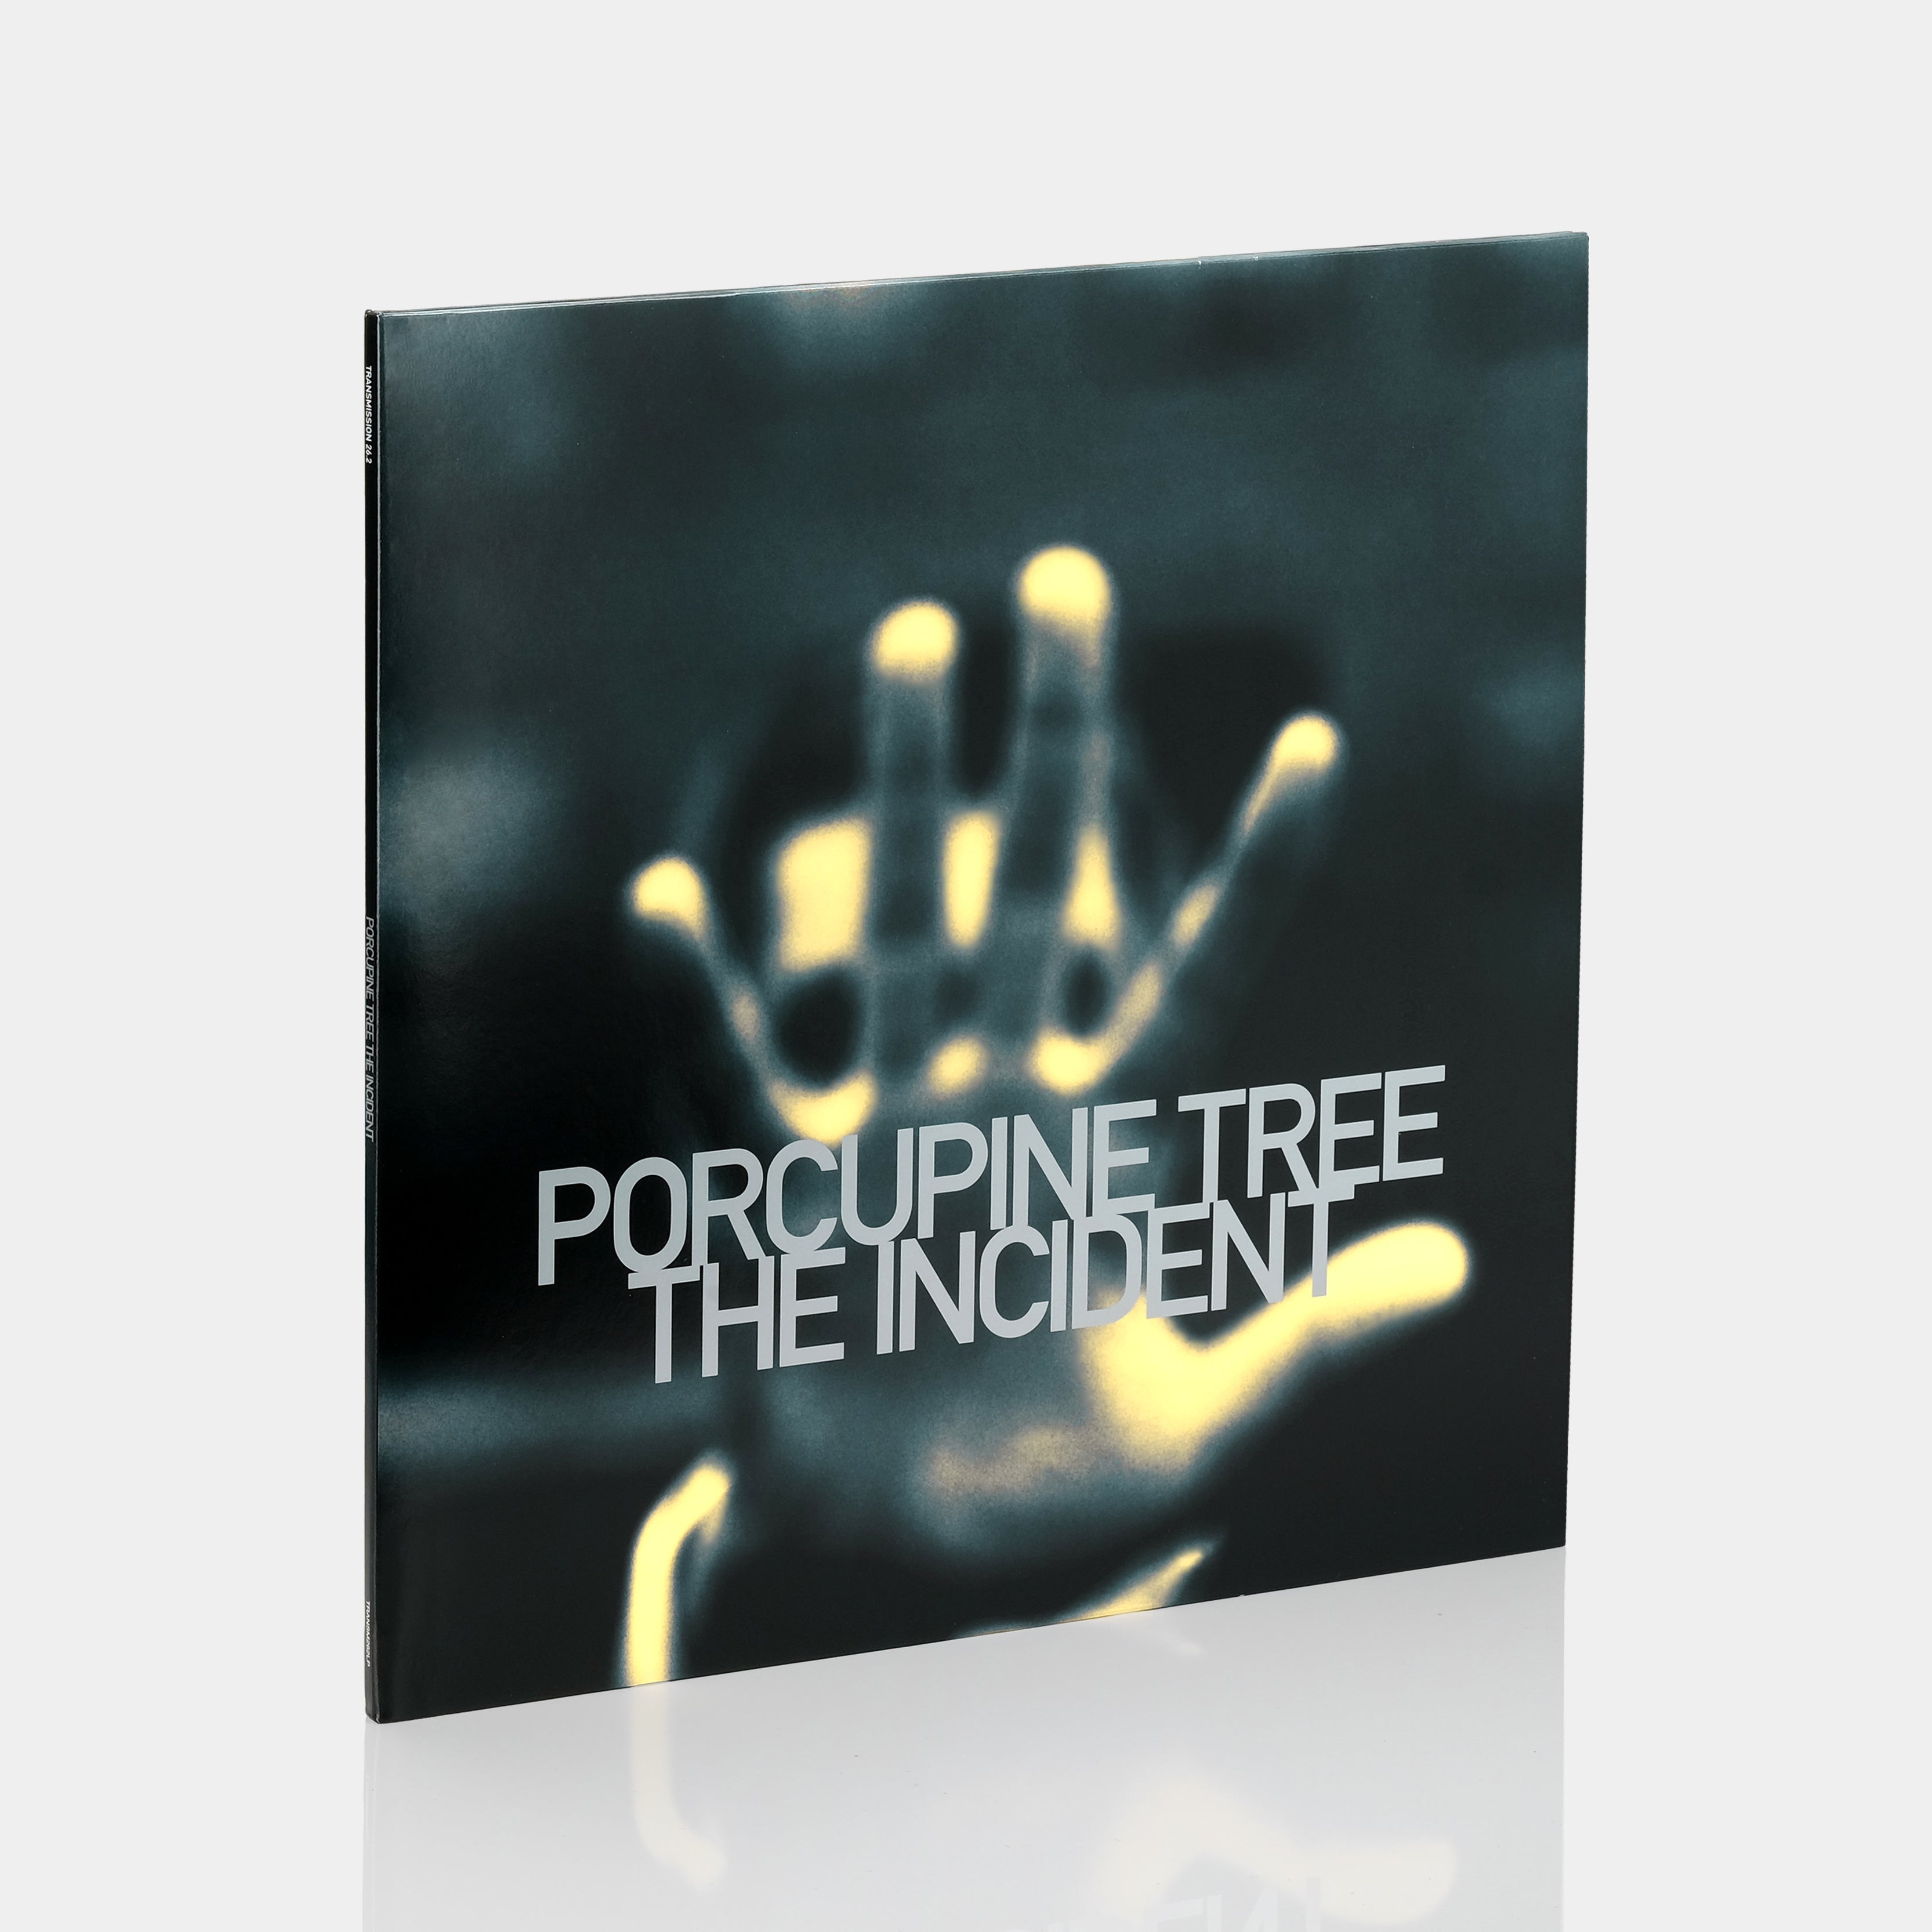 Porcupine Tree - The Incident 2xLP Vinyl Record